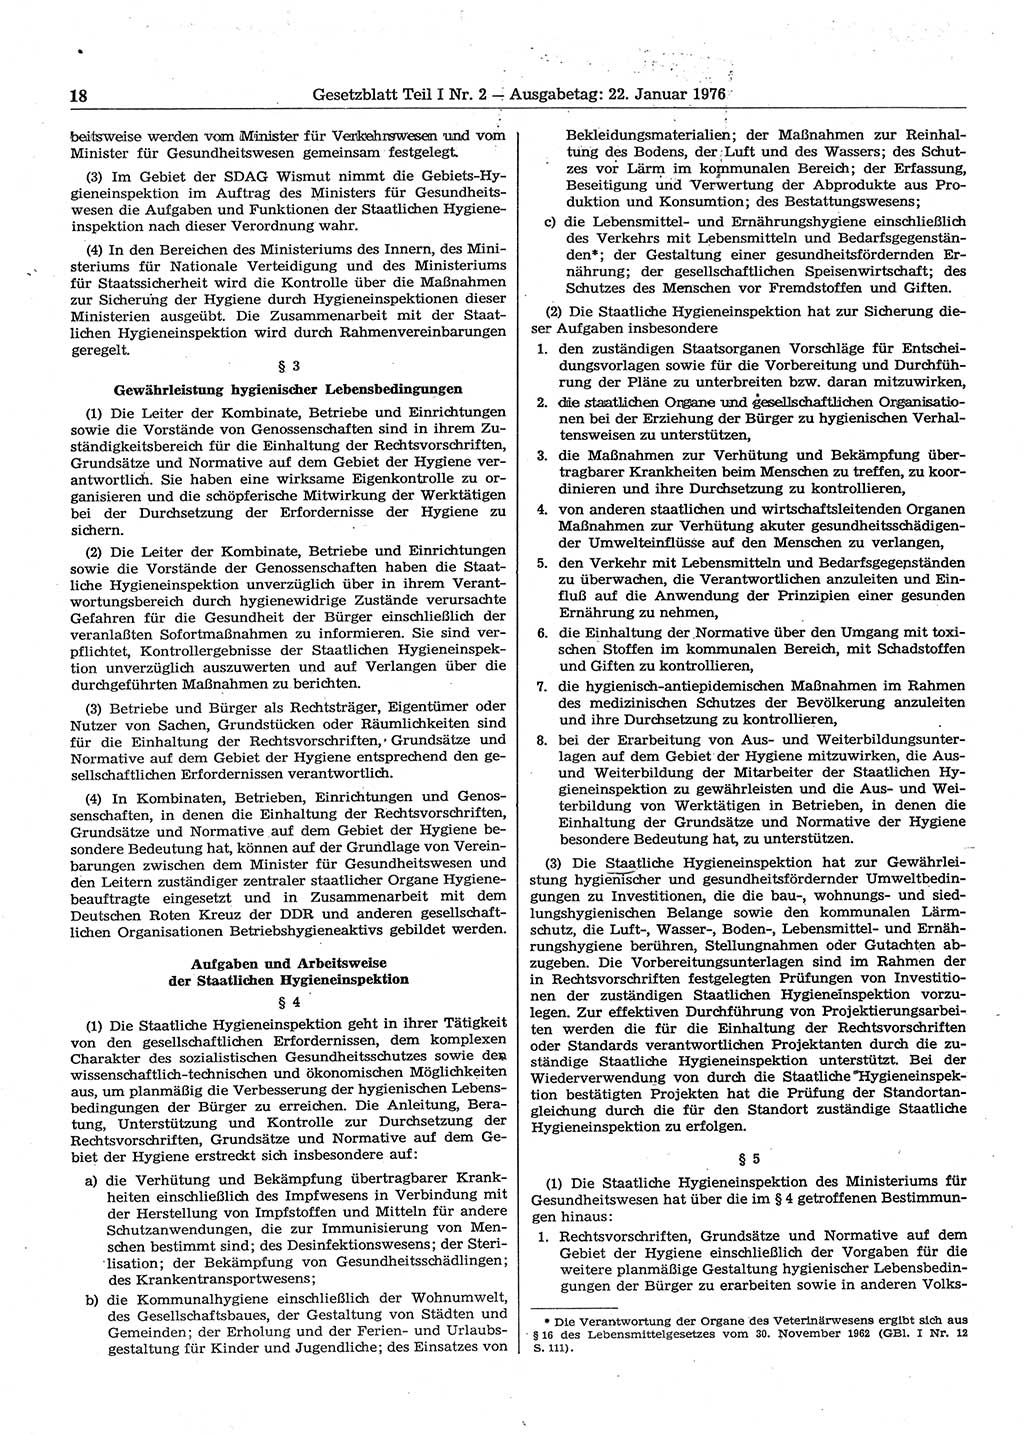 Gesetzblatt (GBl.) der Deutschen Demokratischen Republik (DDR) Teil Ⅰ 1976, Seite 18 (GBl. DDR Ⅰ 1976, S. 18)